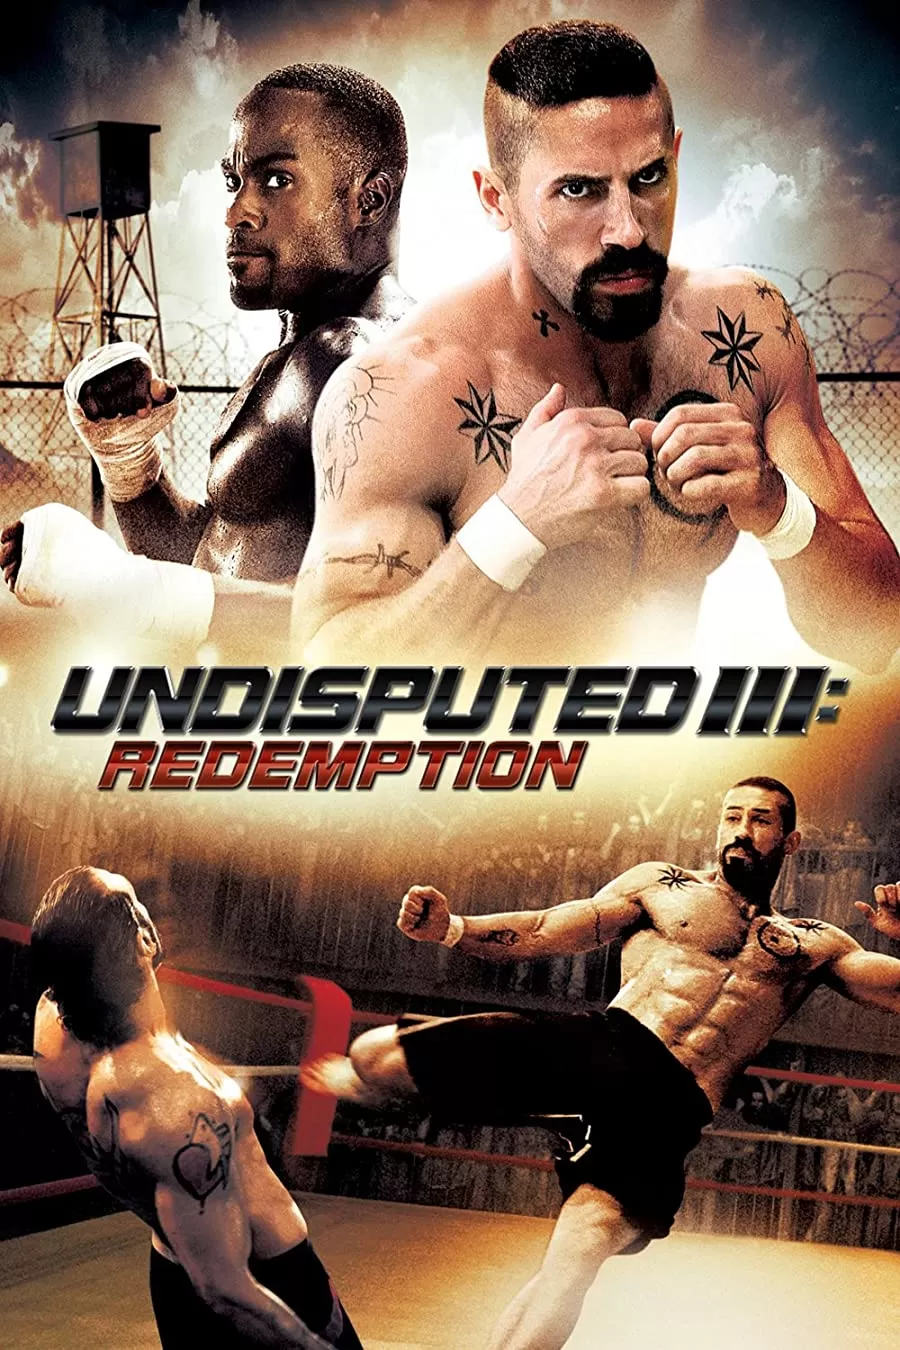 فیلم Undisputed 3: Redemption 2010